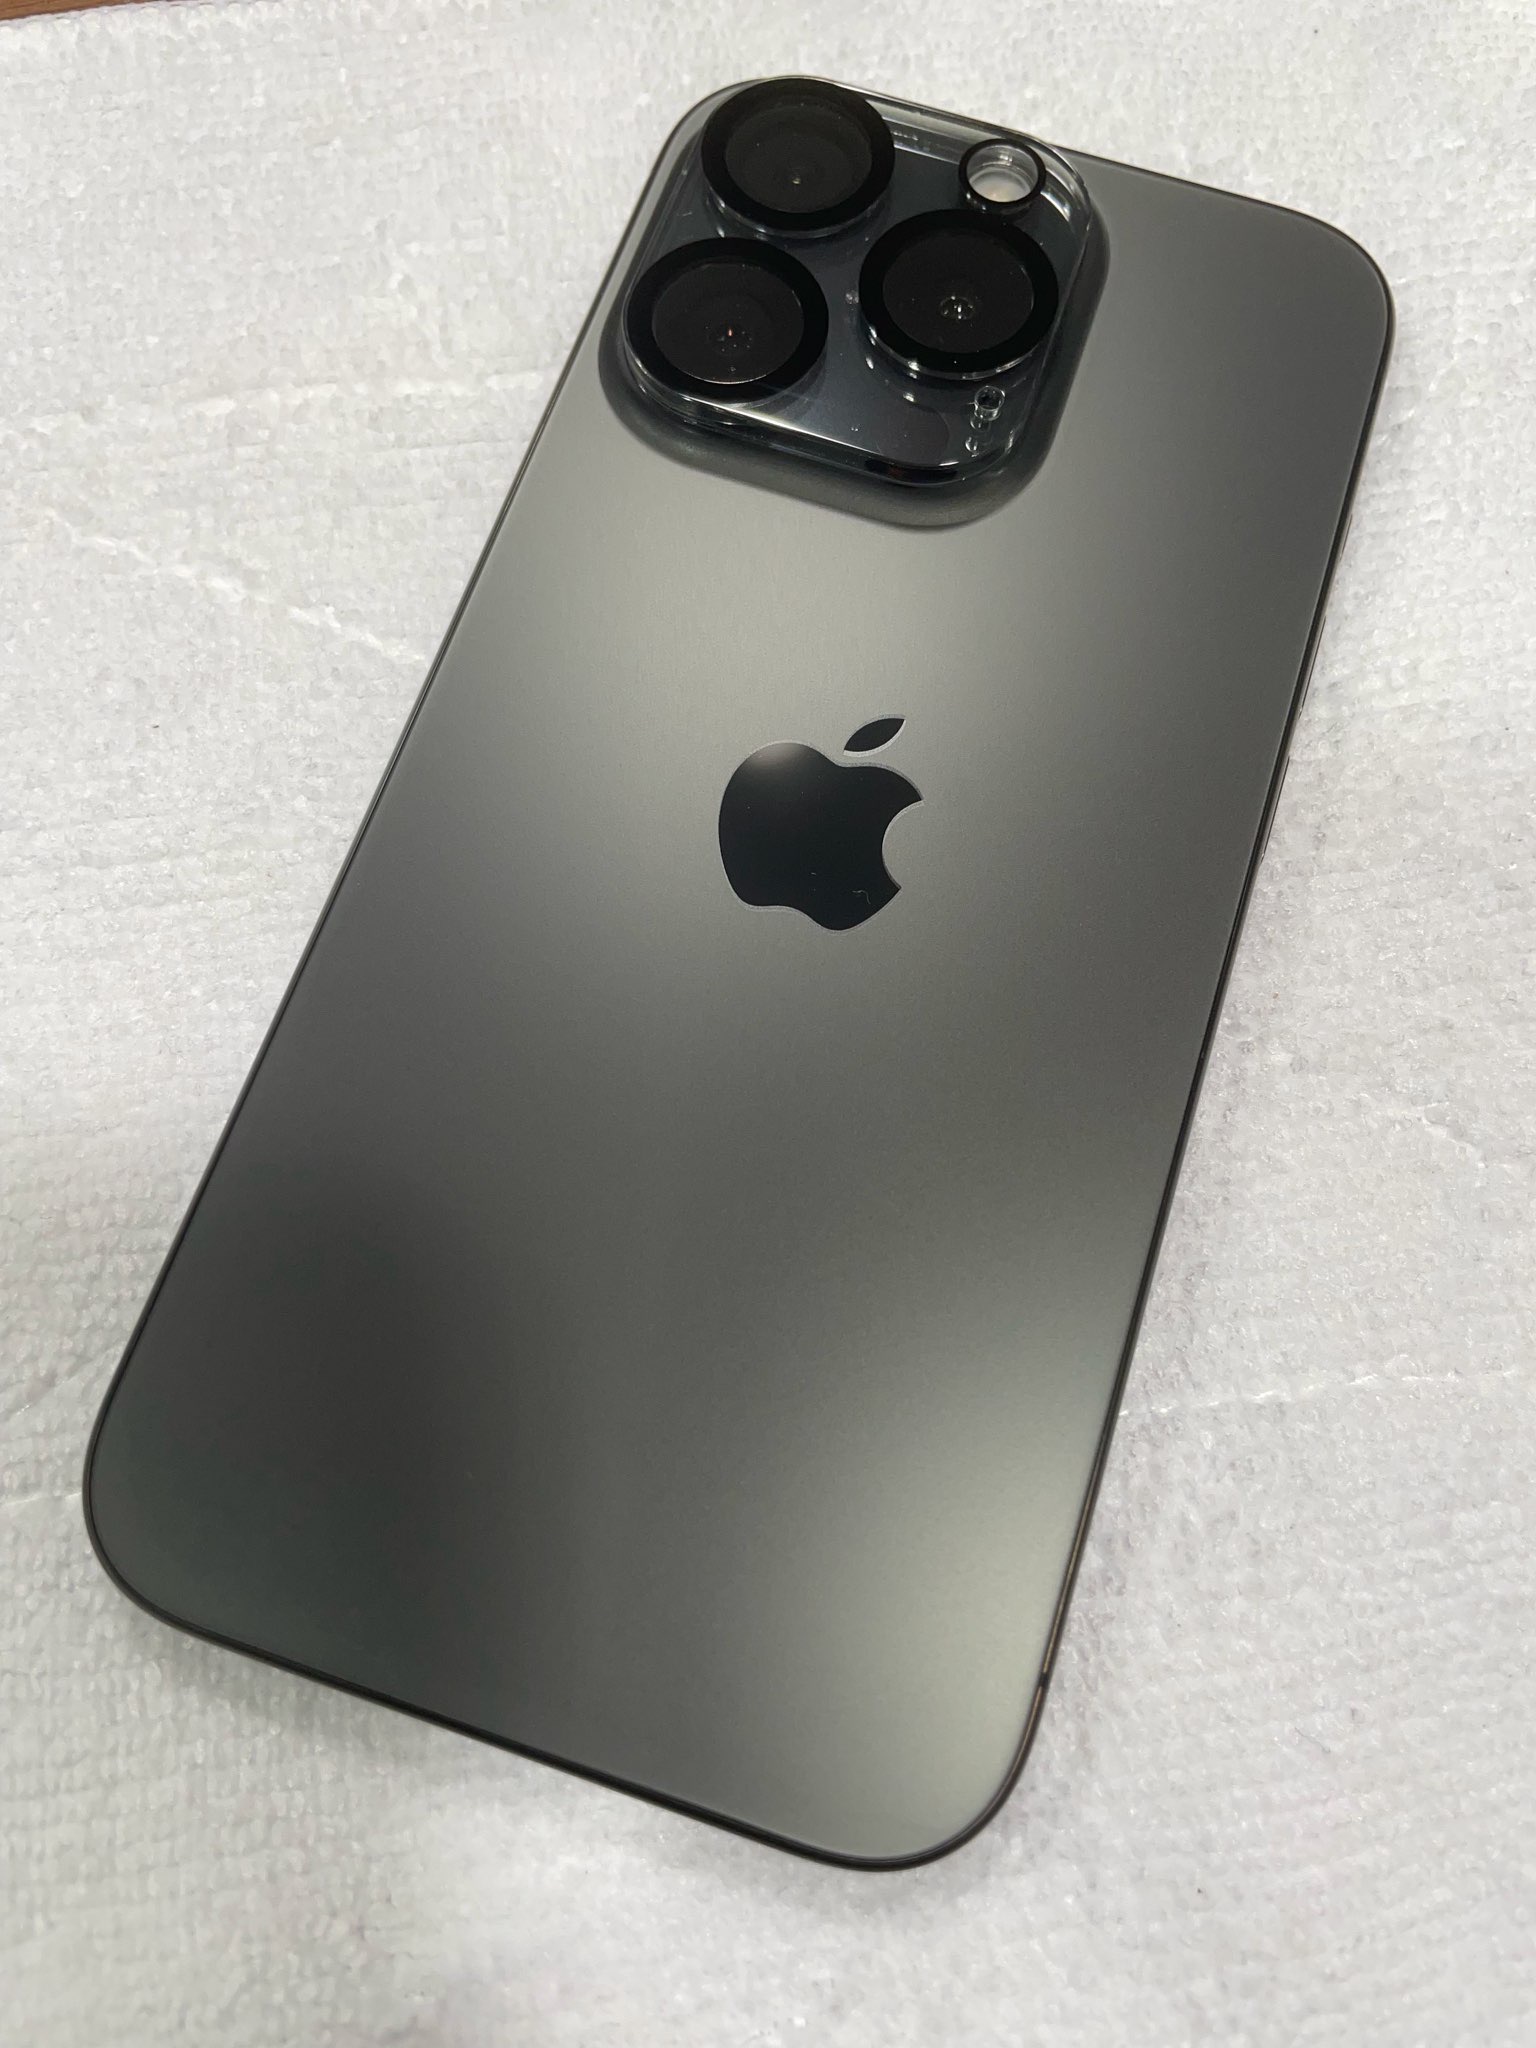 【イオンモール伊丹店】iPhoneを購入したらすぐにガラスコーティング!!! フィルムを貼る前の施工がオススメです!｜iPhone 15 Pro 両面ガラスコーティング施工